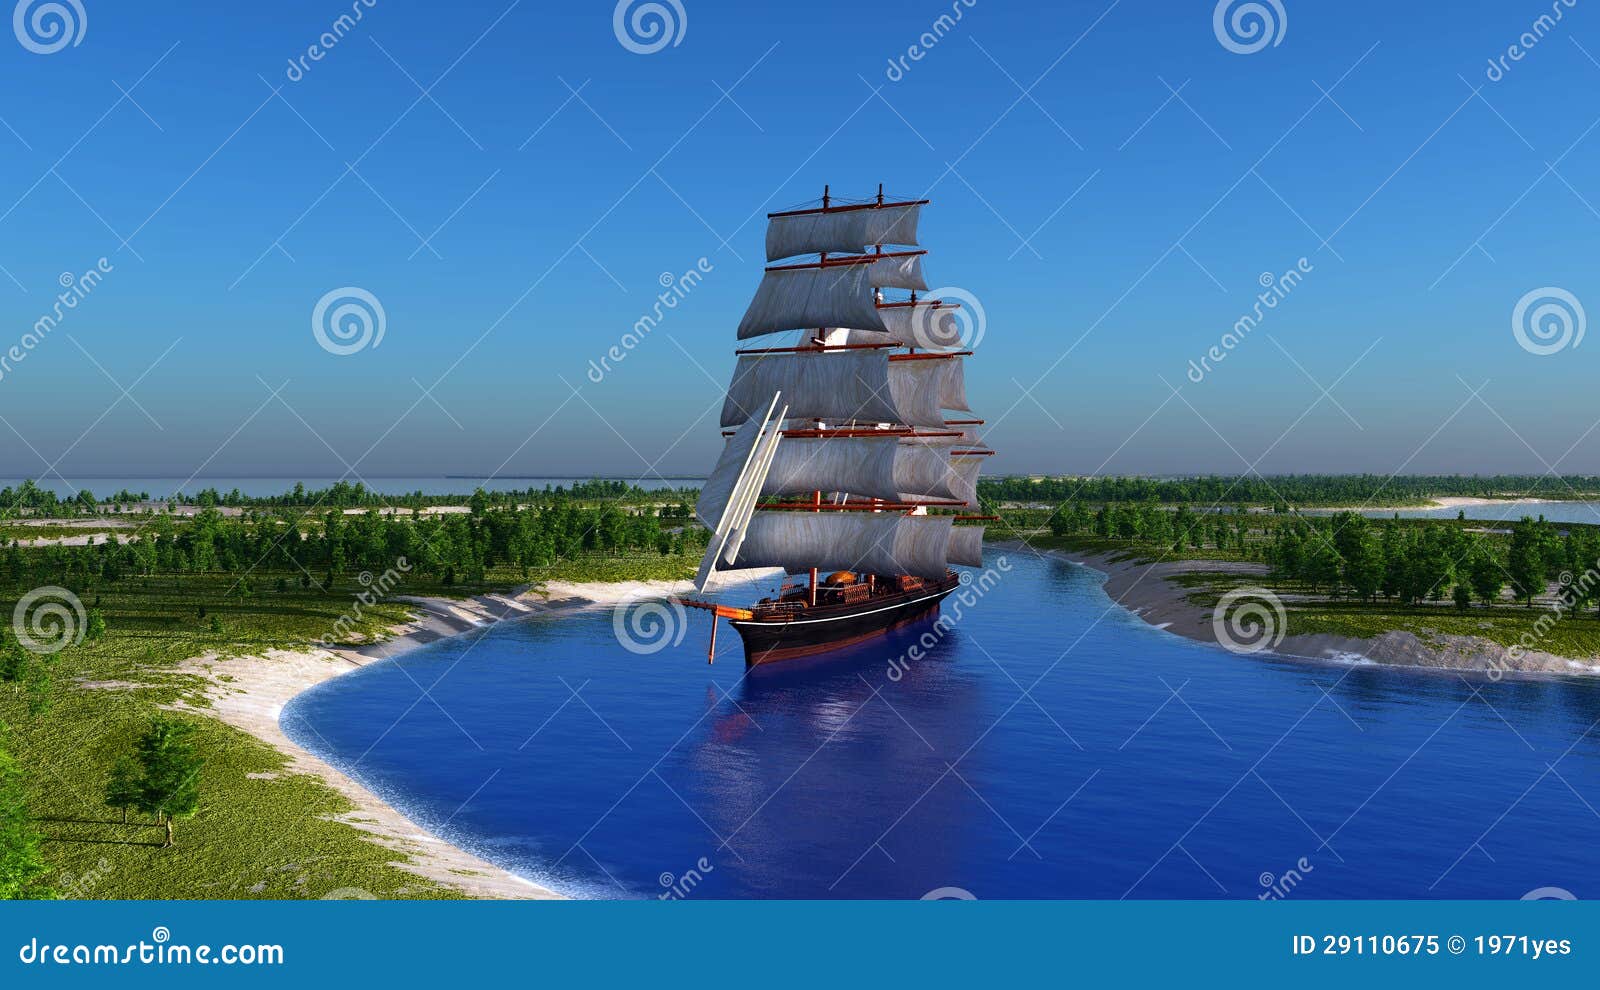 sailboat in the lagoon stock illustration. illustration of